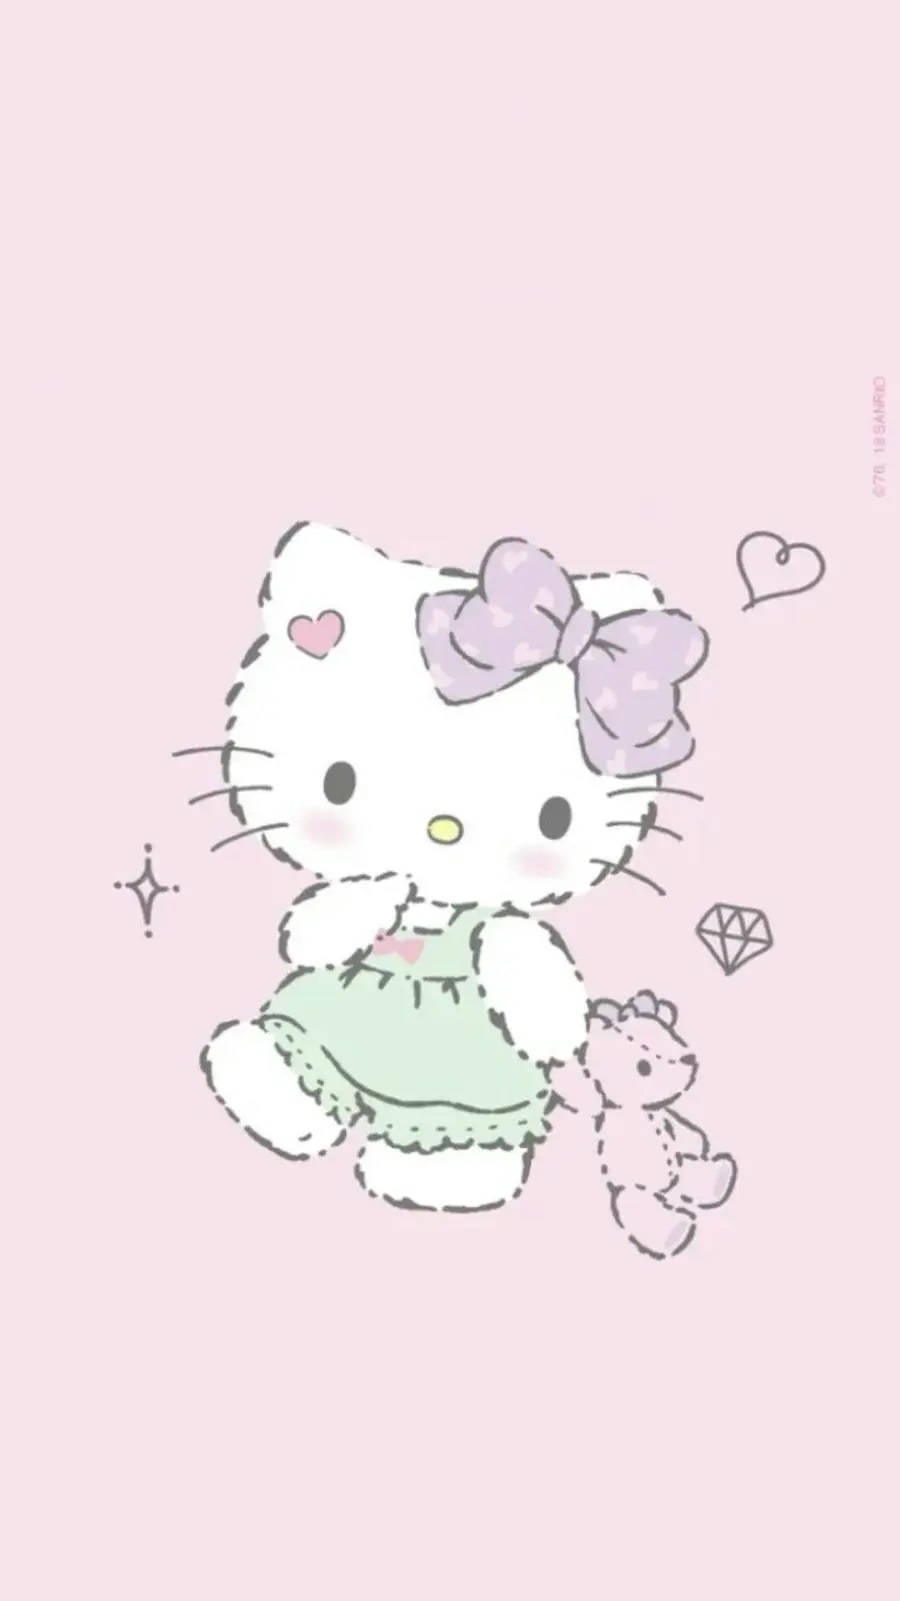 Fuzzy Cartoon Hello Kitty PFP Wallpaper